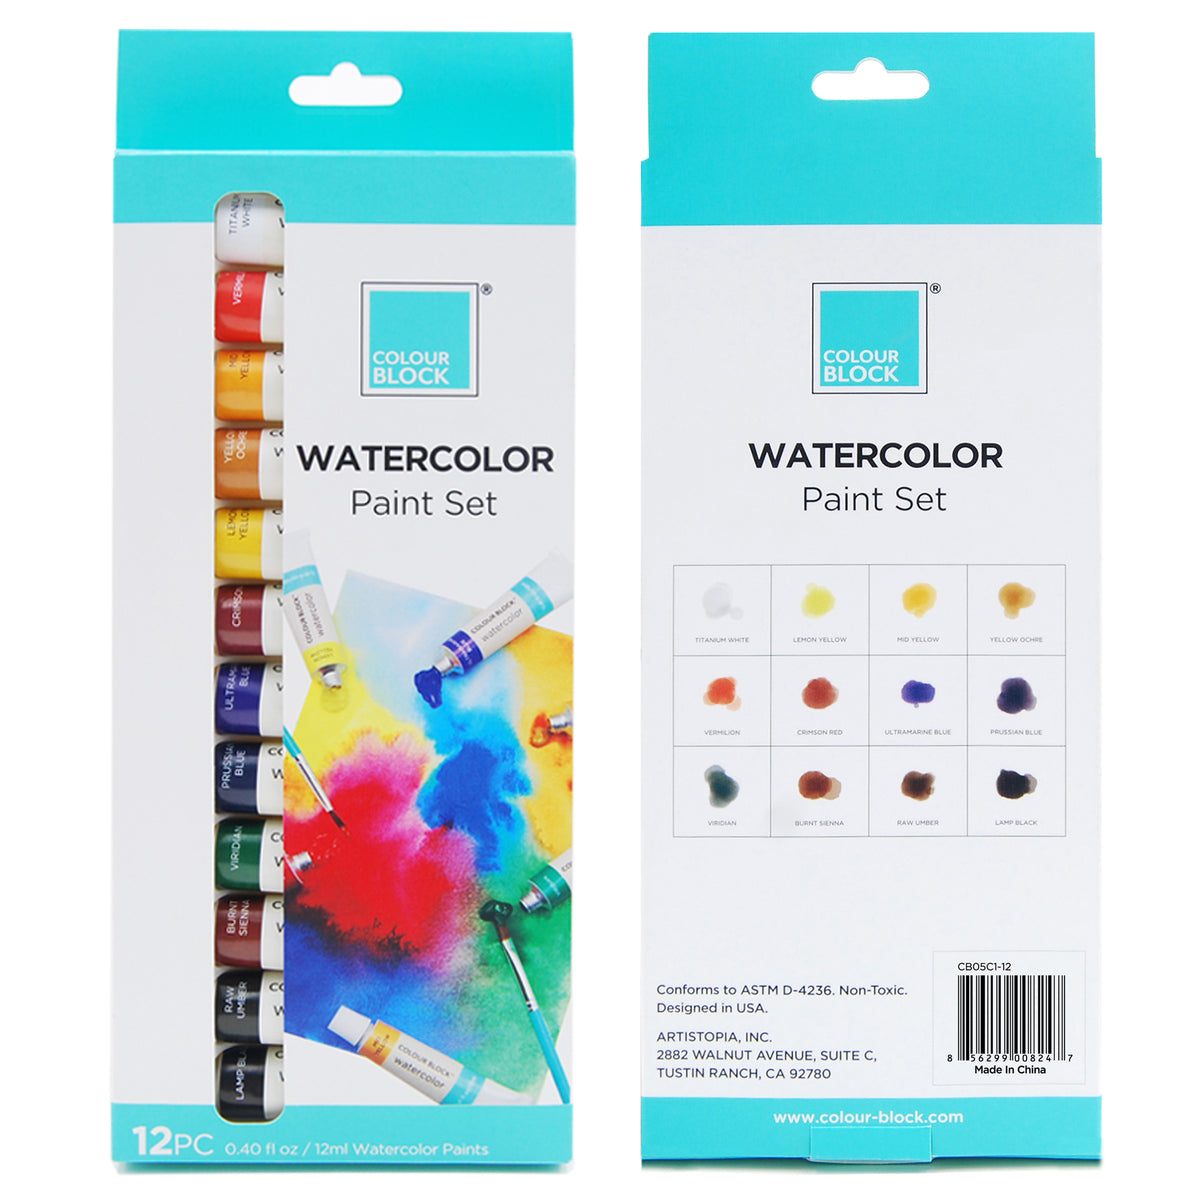 Colour Block Watercolor Paint Set - 32pc